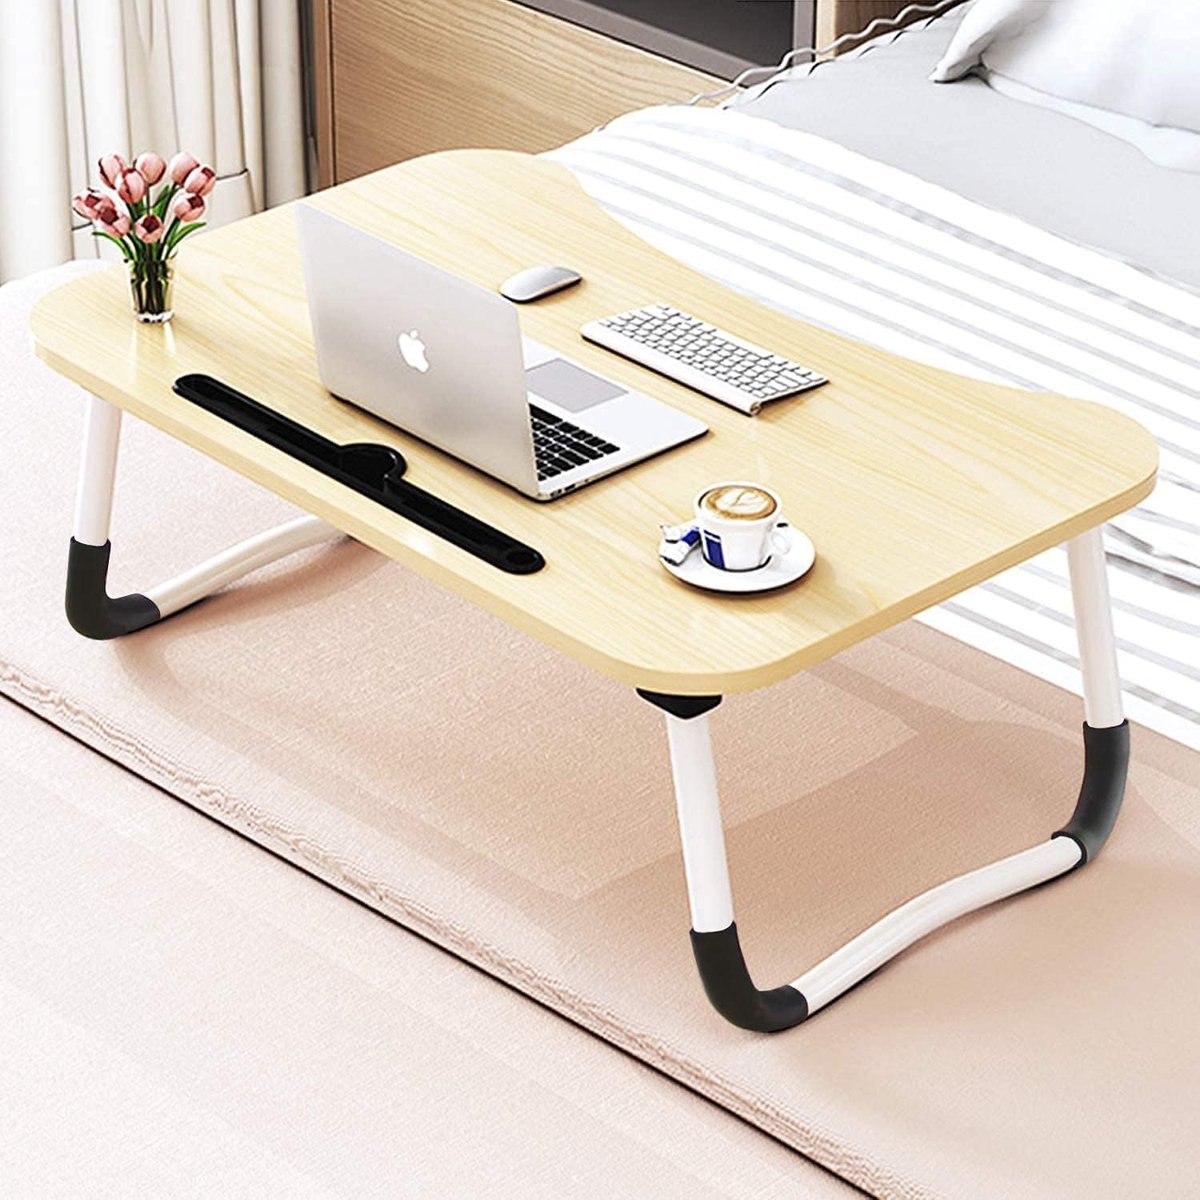 Table pour ordinateur portable comme plateau pour lit ou canapé en